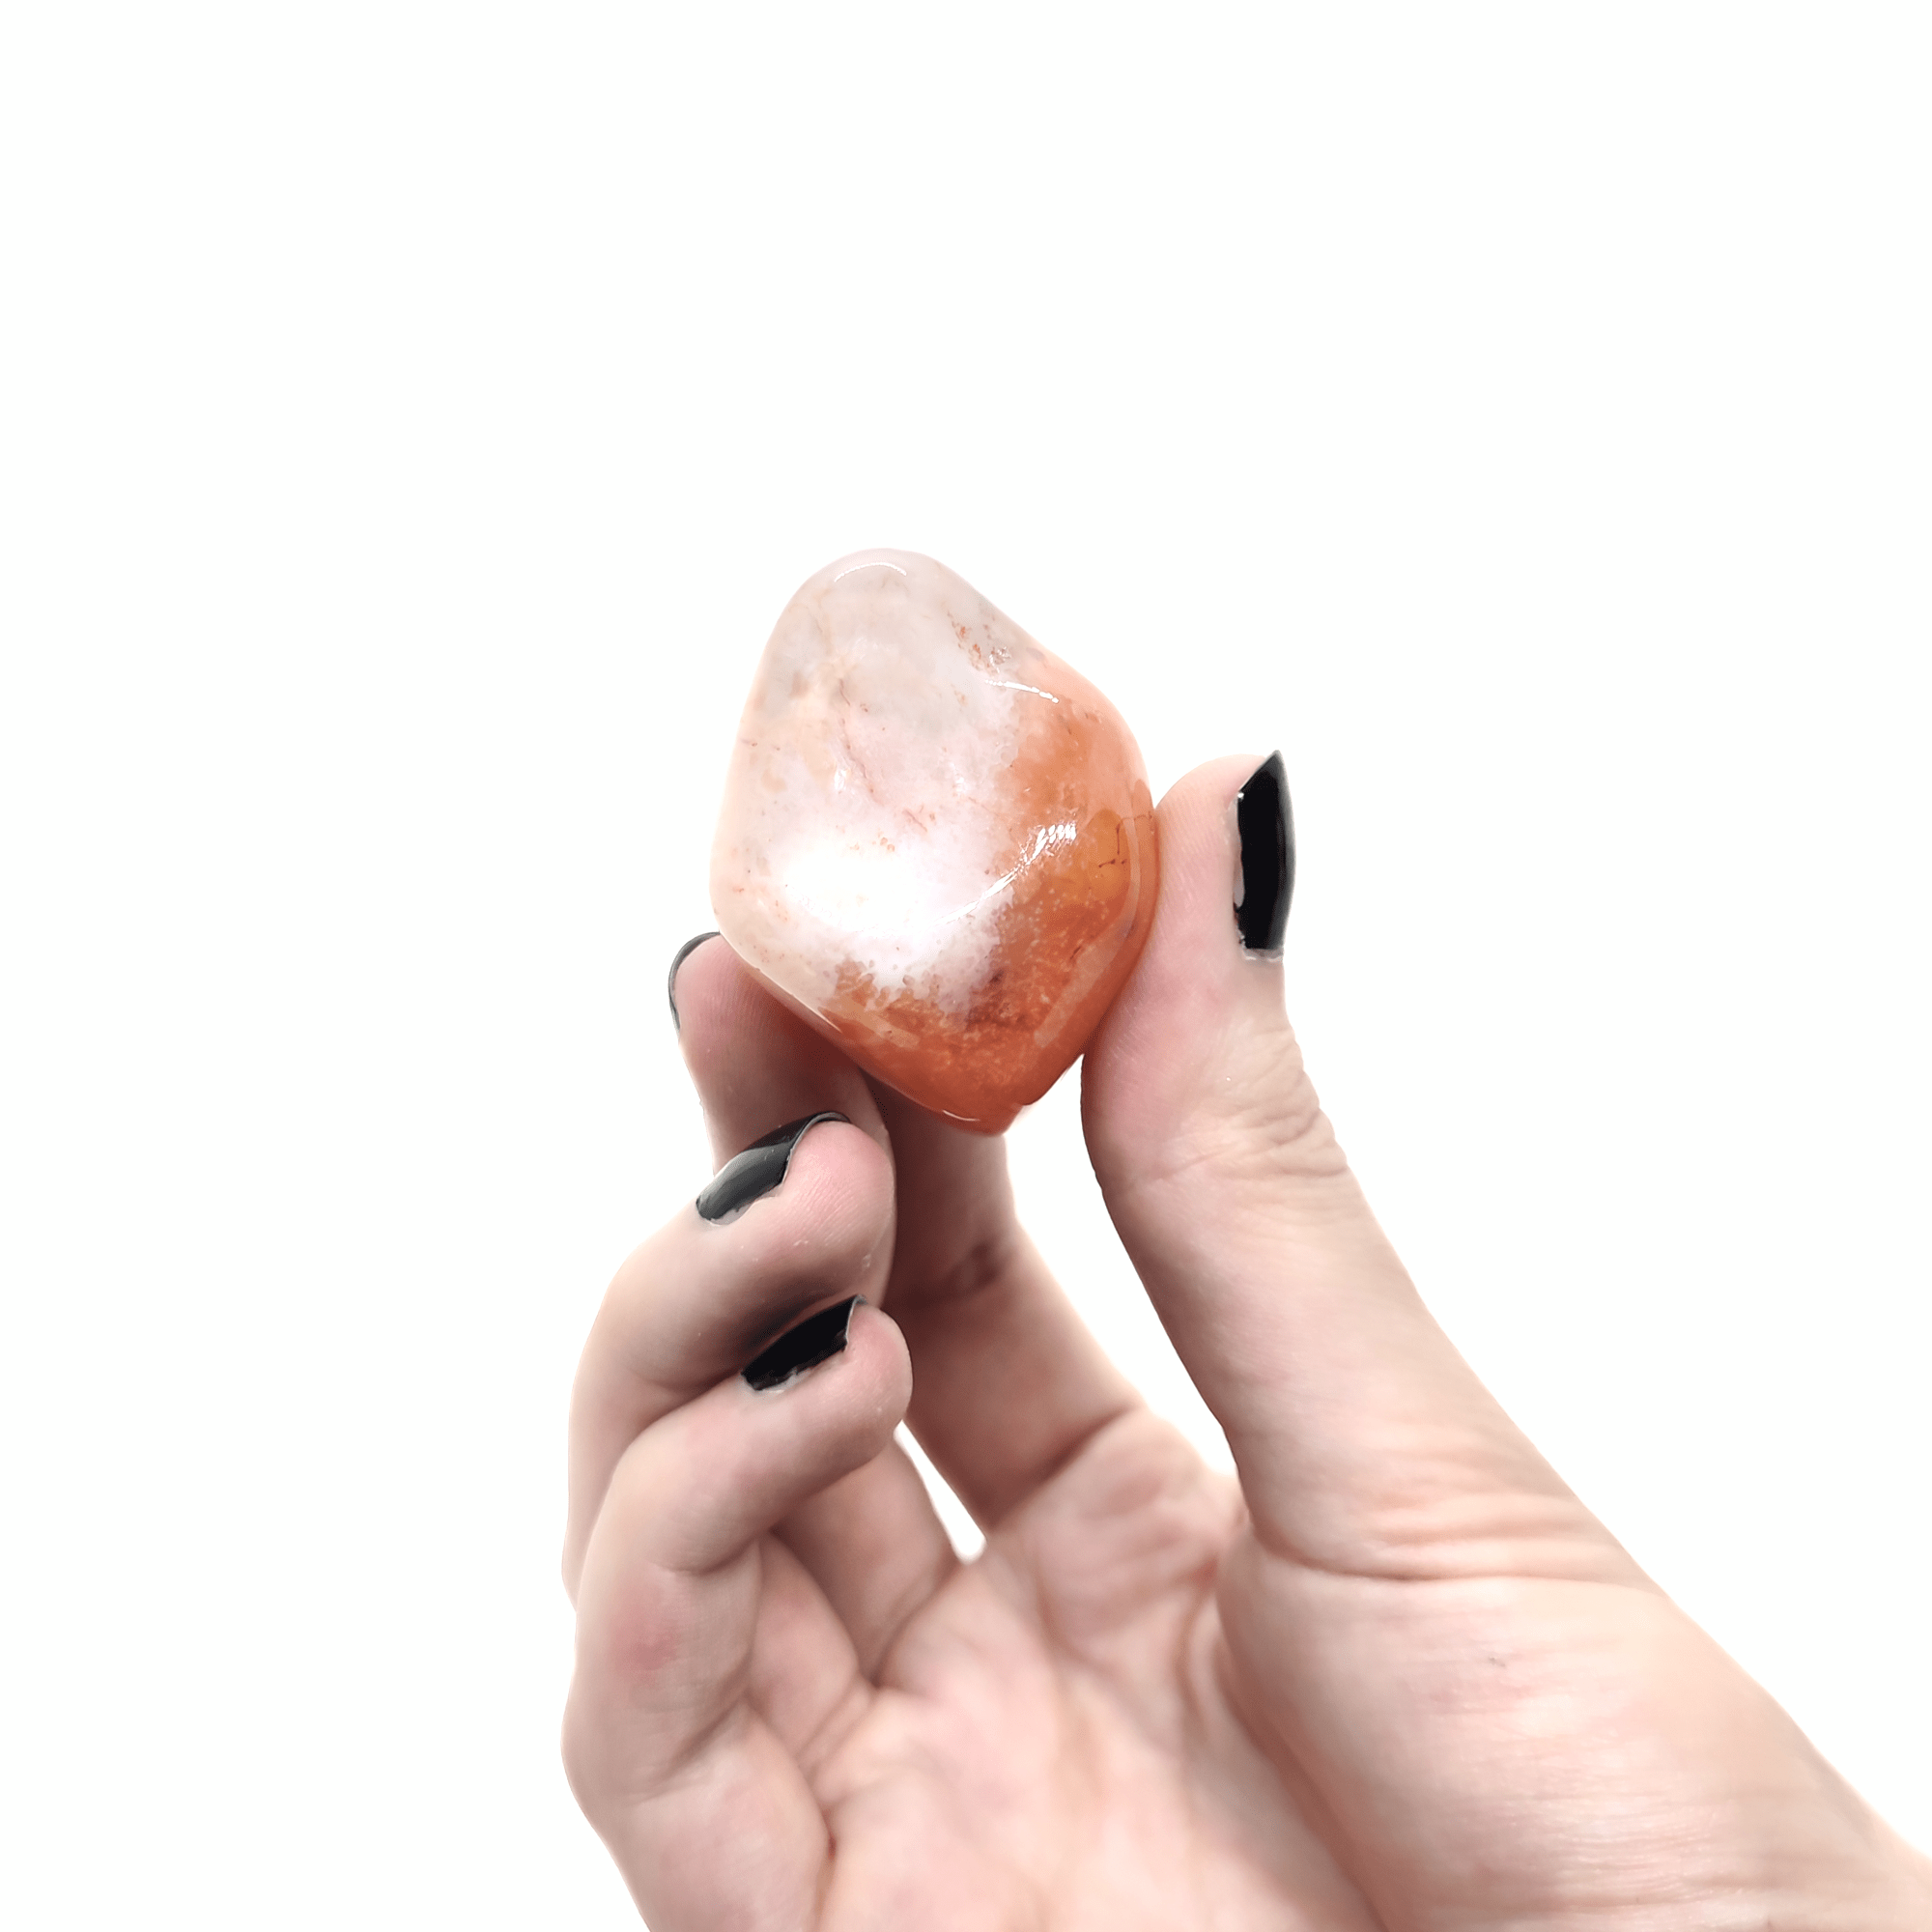 Ein großer Karneol Trommelstein. Dieser Edelstein ist transparent orange & weist kristalline Einschlüsse auf.